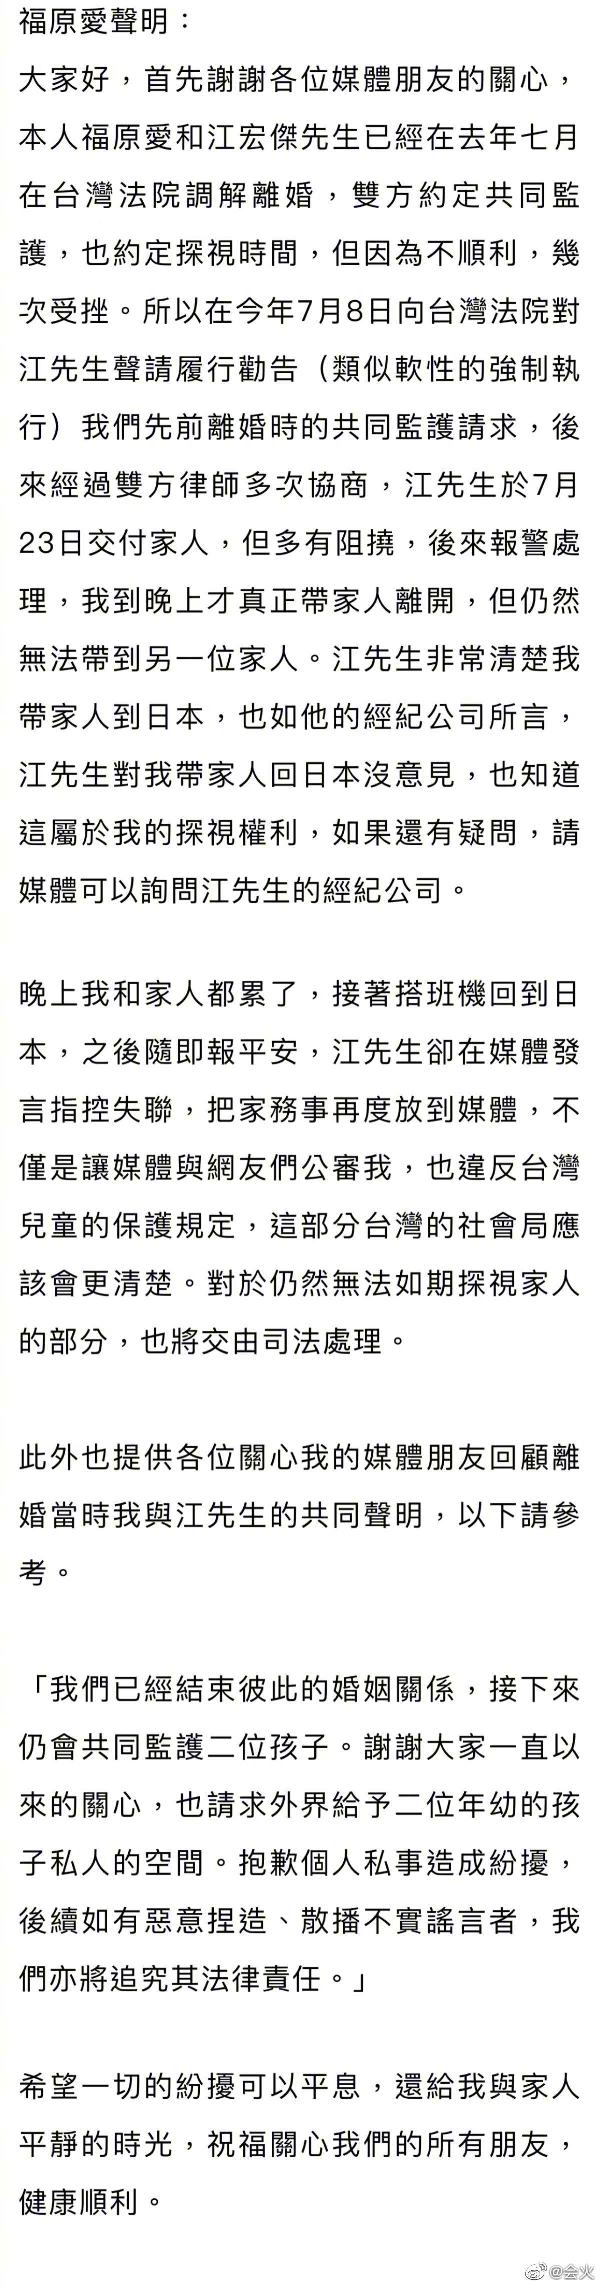 福原爱发表声明否认江宏杰失联指控，证实已带孩子返日-万博·体育(ManBetX)